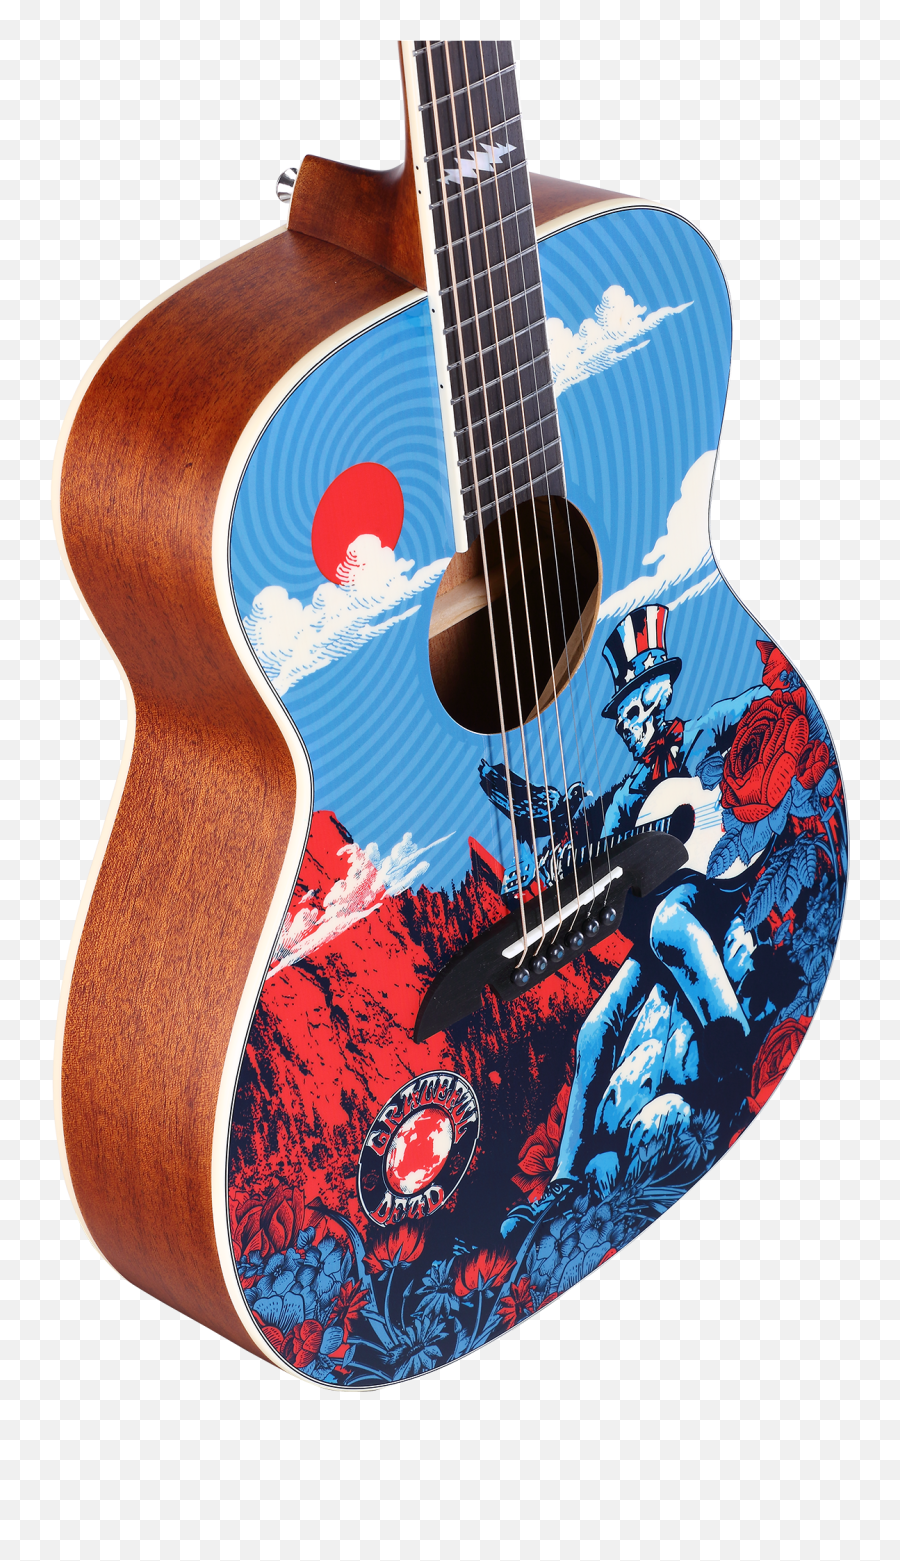 Grateful Dead Guitars - Alvarez Grateful Dead Guitar Emoji,Guitar Center Logo